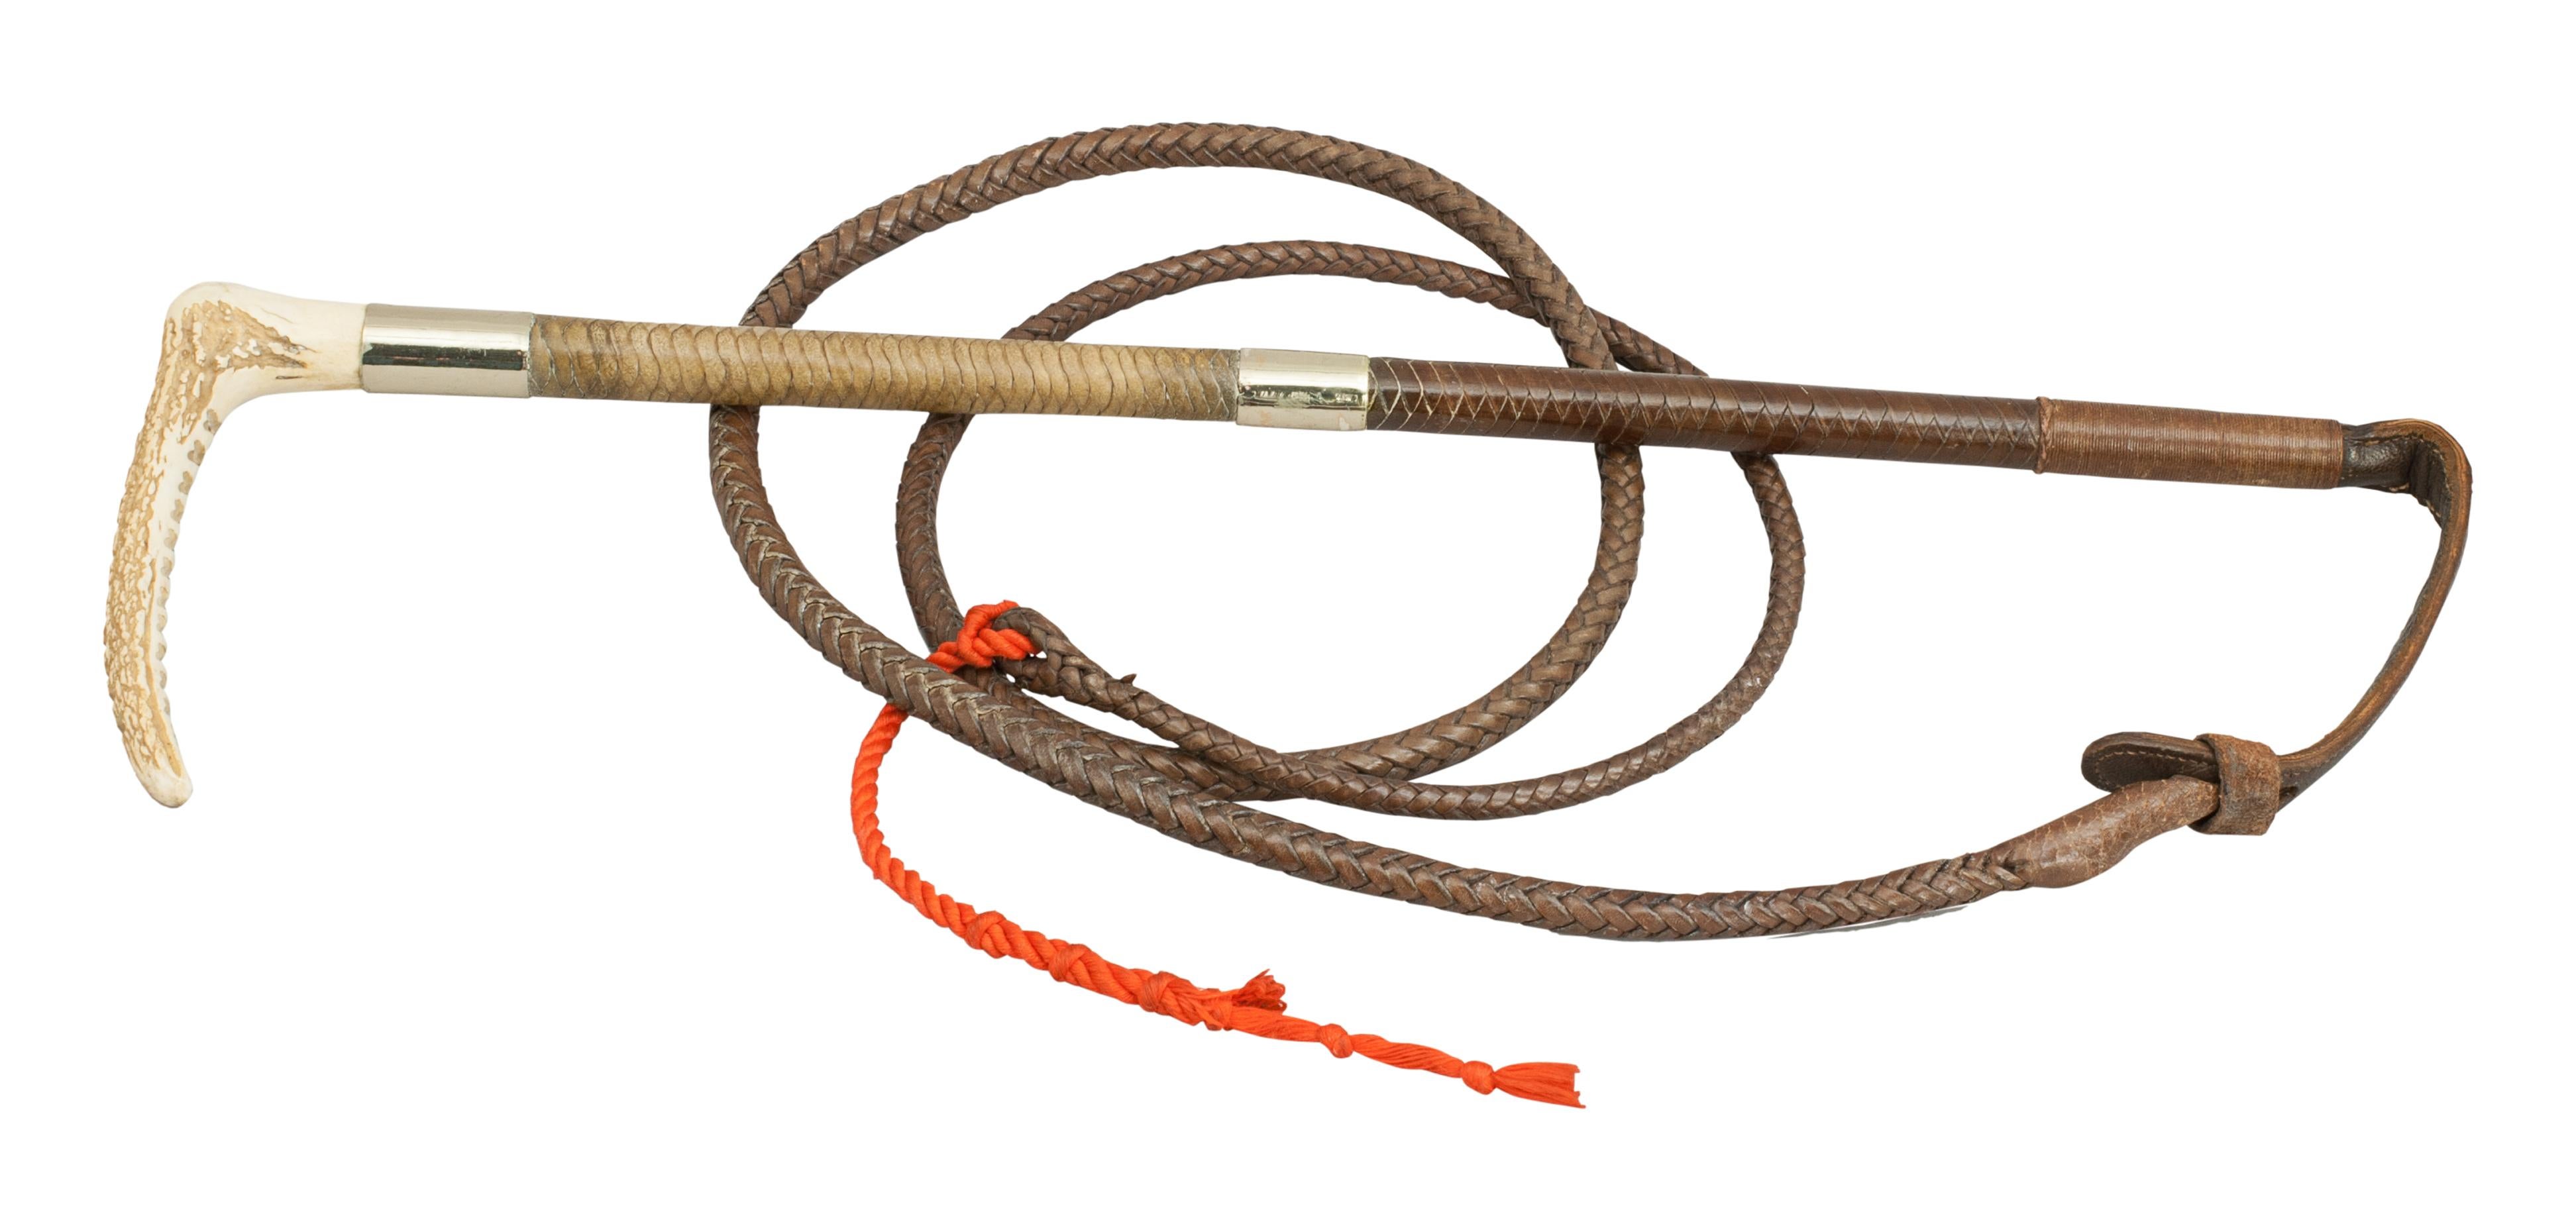 l' 'A A.G da P.M Antico marcata 1898 SILVER Hunt Whip-antler handle 